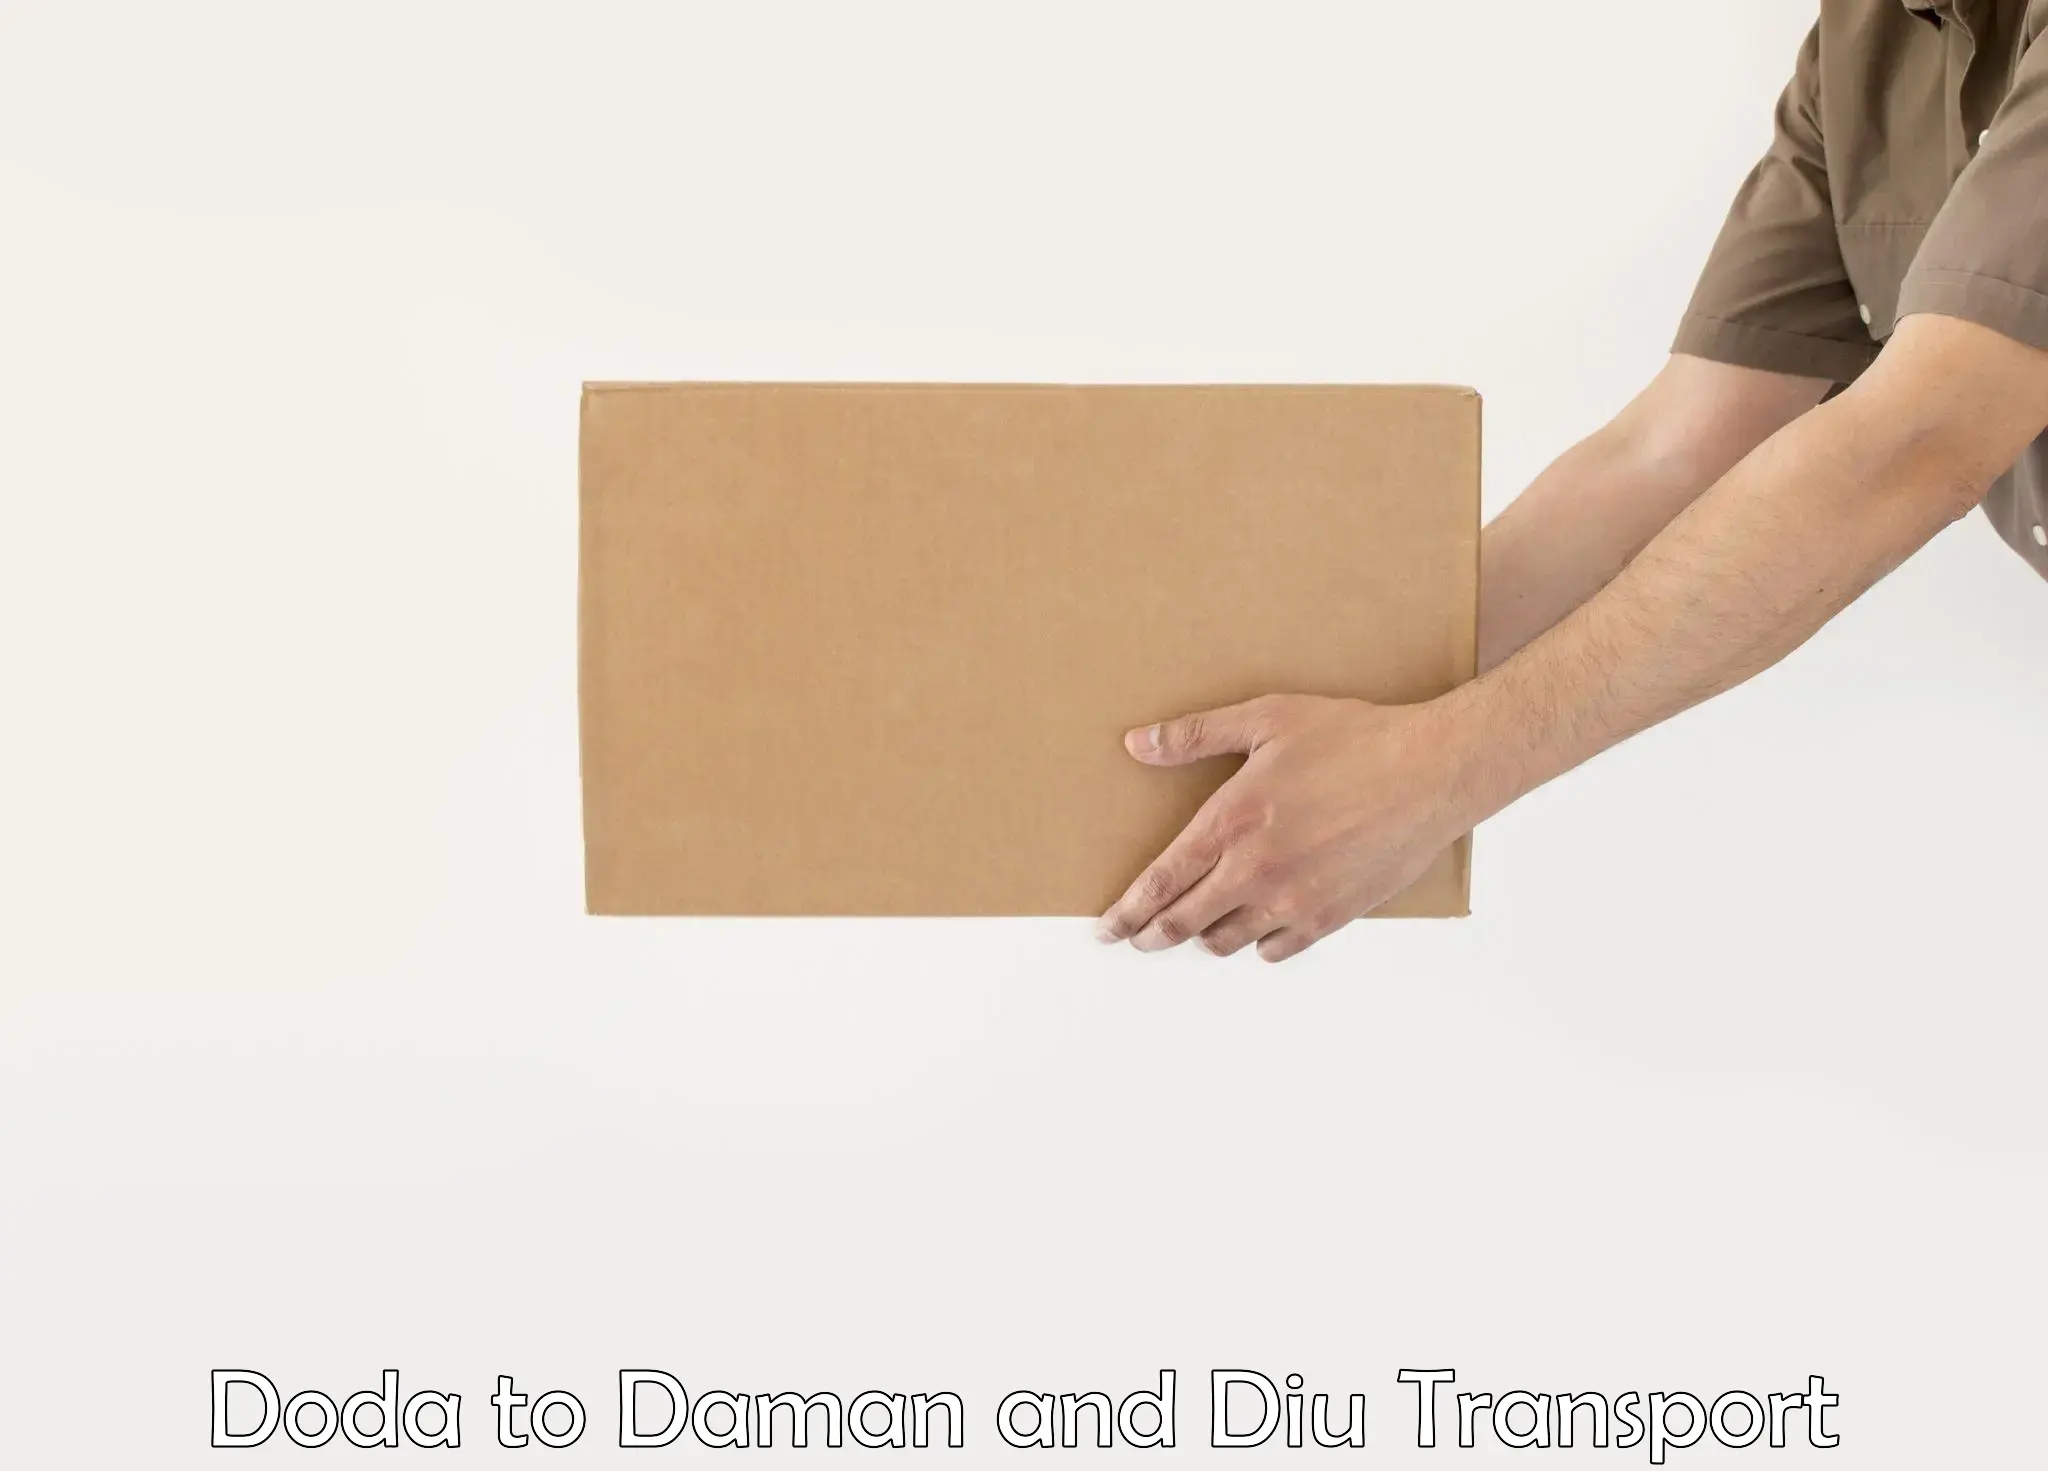 Two wheeler parcel service Doda to Daman